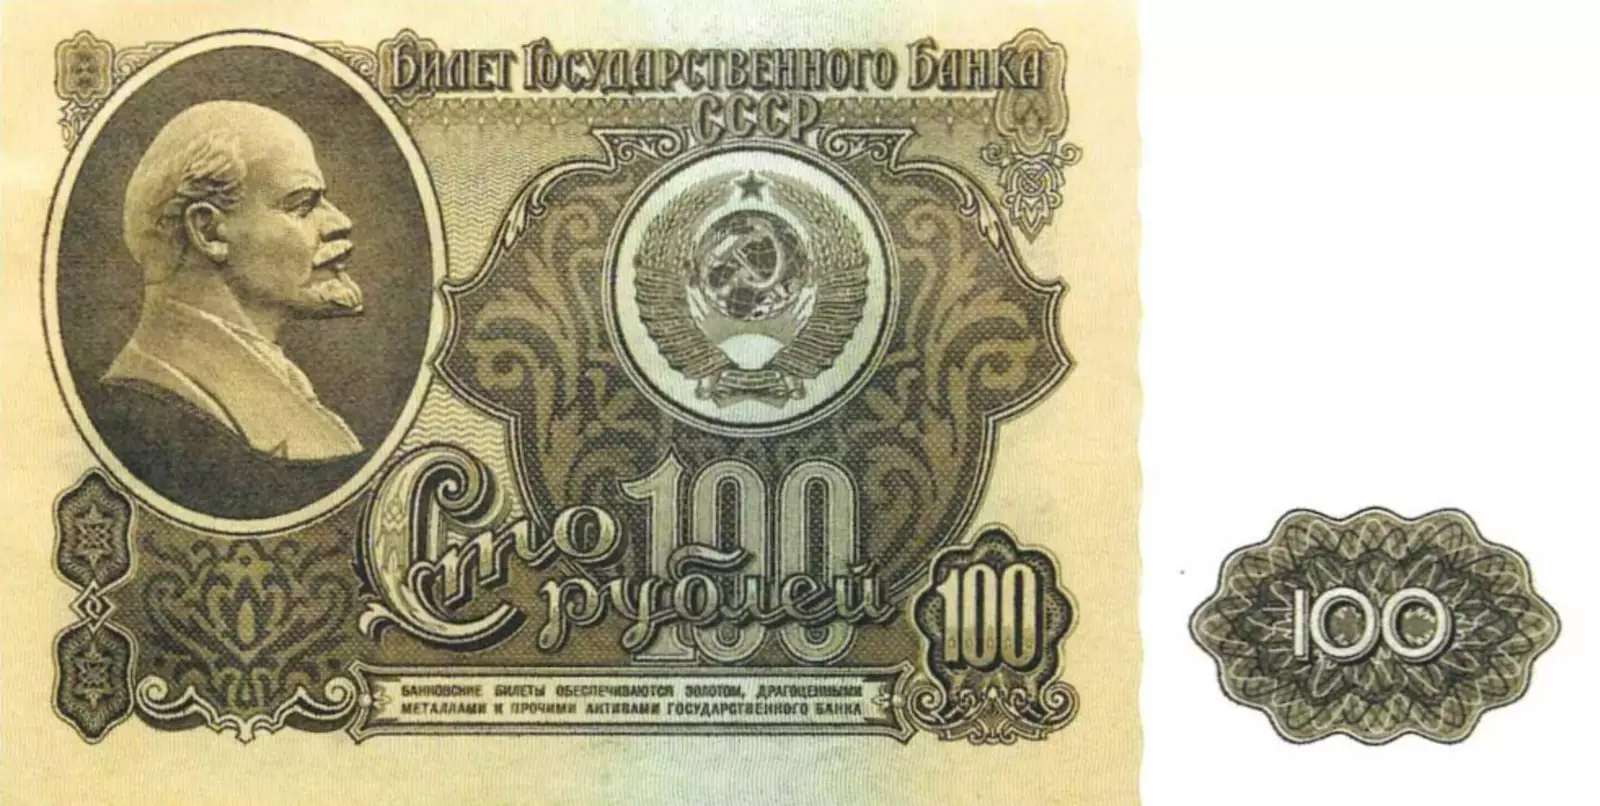 100 рублей образца 1961 года.Из собрания Музея Банка России